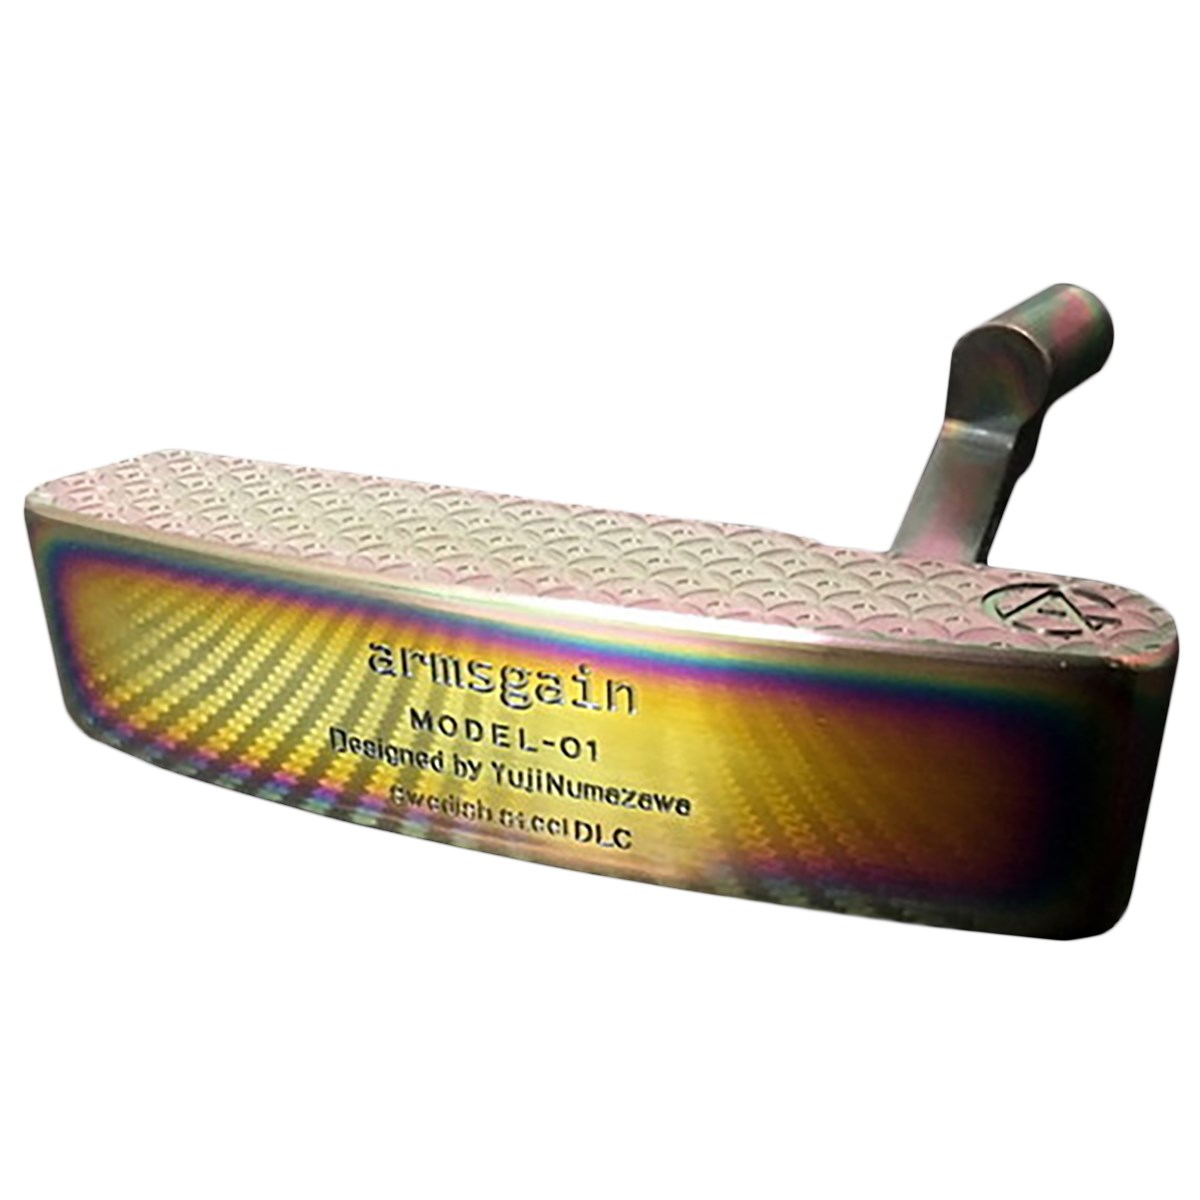  アームスゲイン Model-01 響スティールシリーズ DLC Rainbow コーティング仕様 ゴルフ